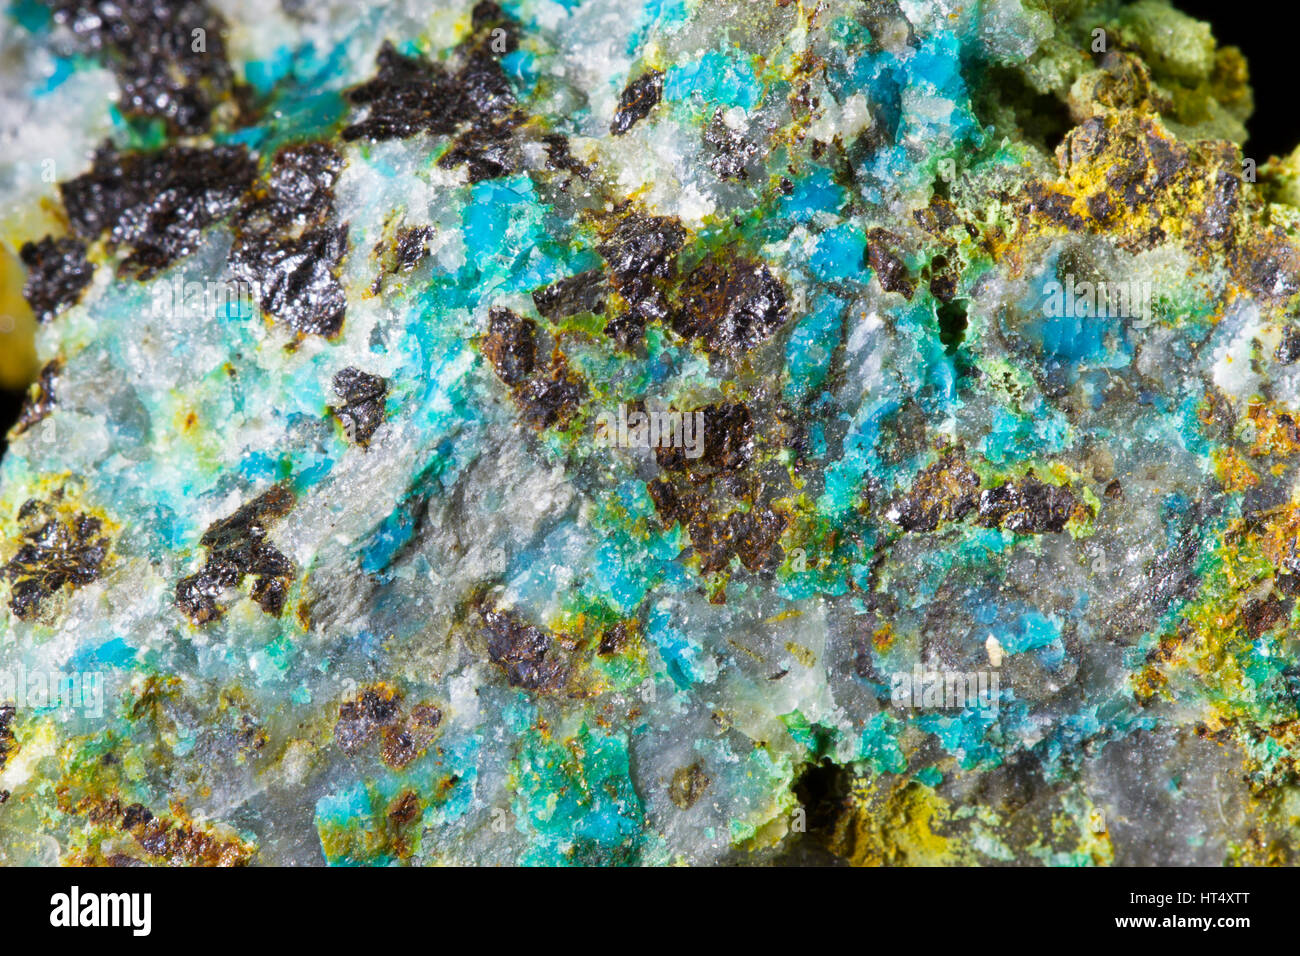 Chrysocolla (hydrated copper phyllosilicate) crystals encrusting quartz. From the   Mynydd Gorddu mine, Ceredigion, Wales. Stock Photo